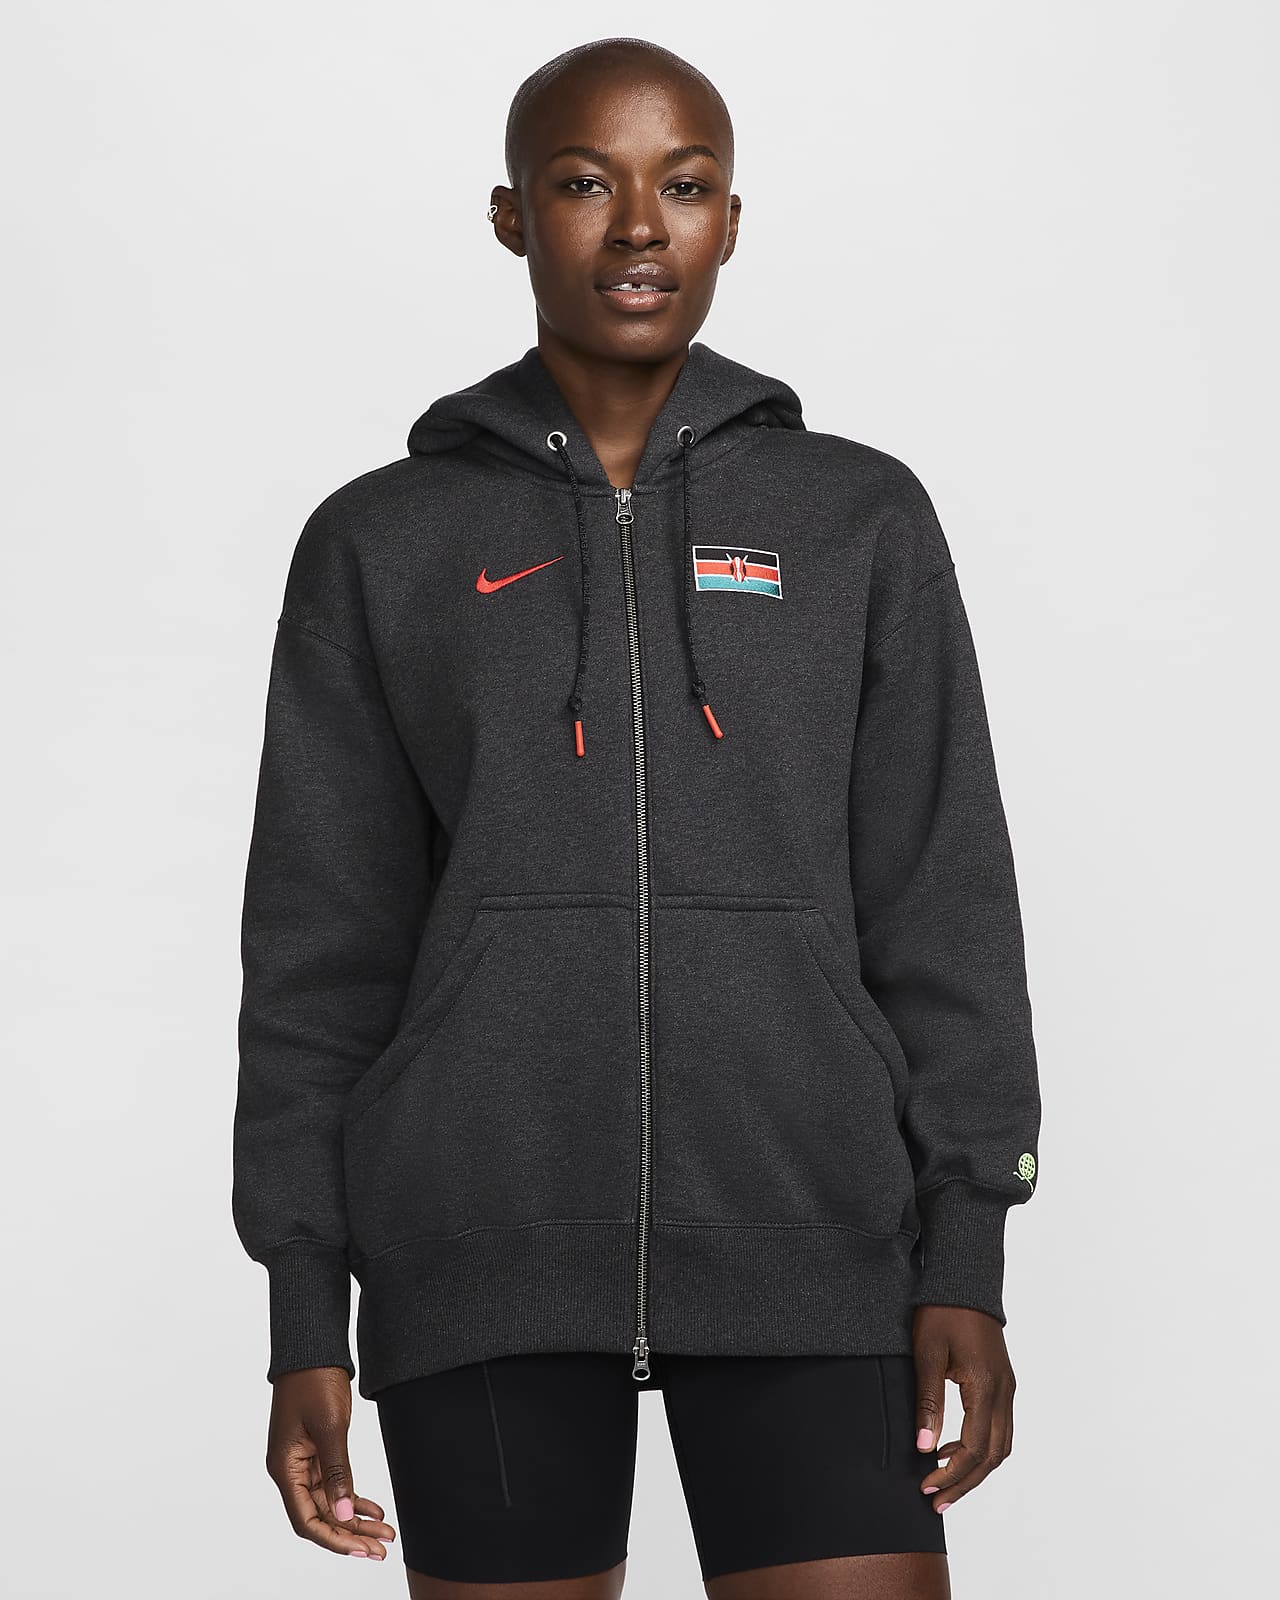 Team Kenya Phoenix Fleece Sudadera con capucha y cremallera completa oversize Nike - Mujer